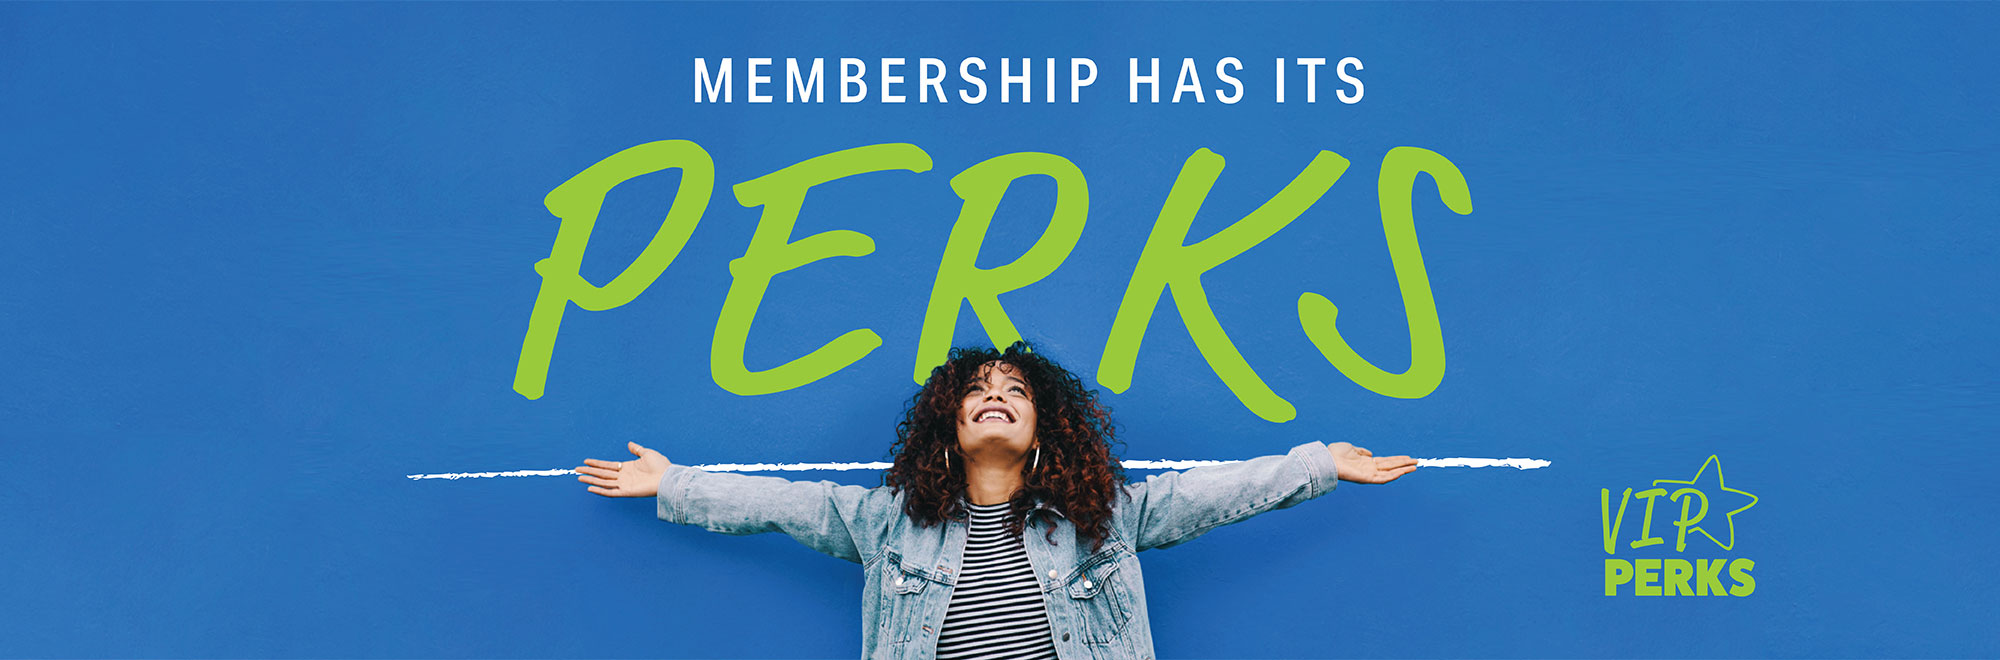 VIP Perks: Membership Has Its Perks